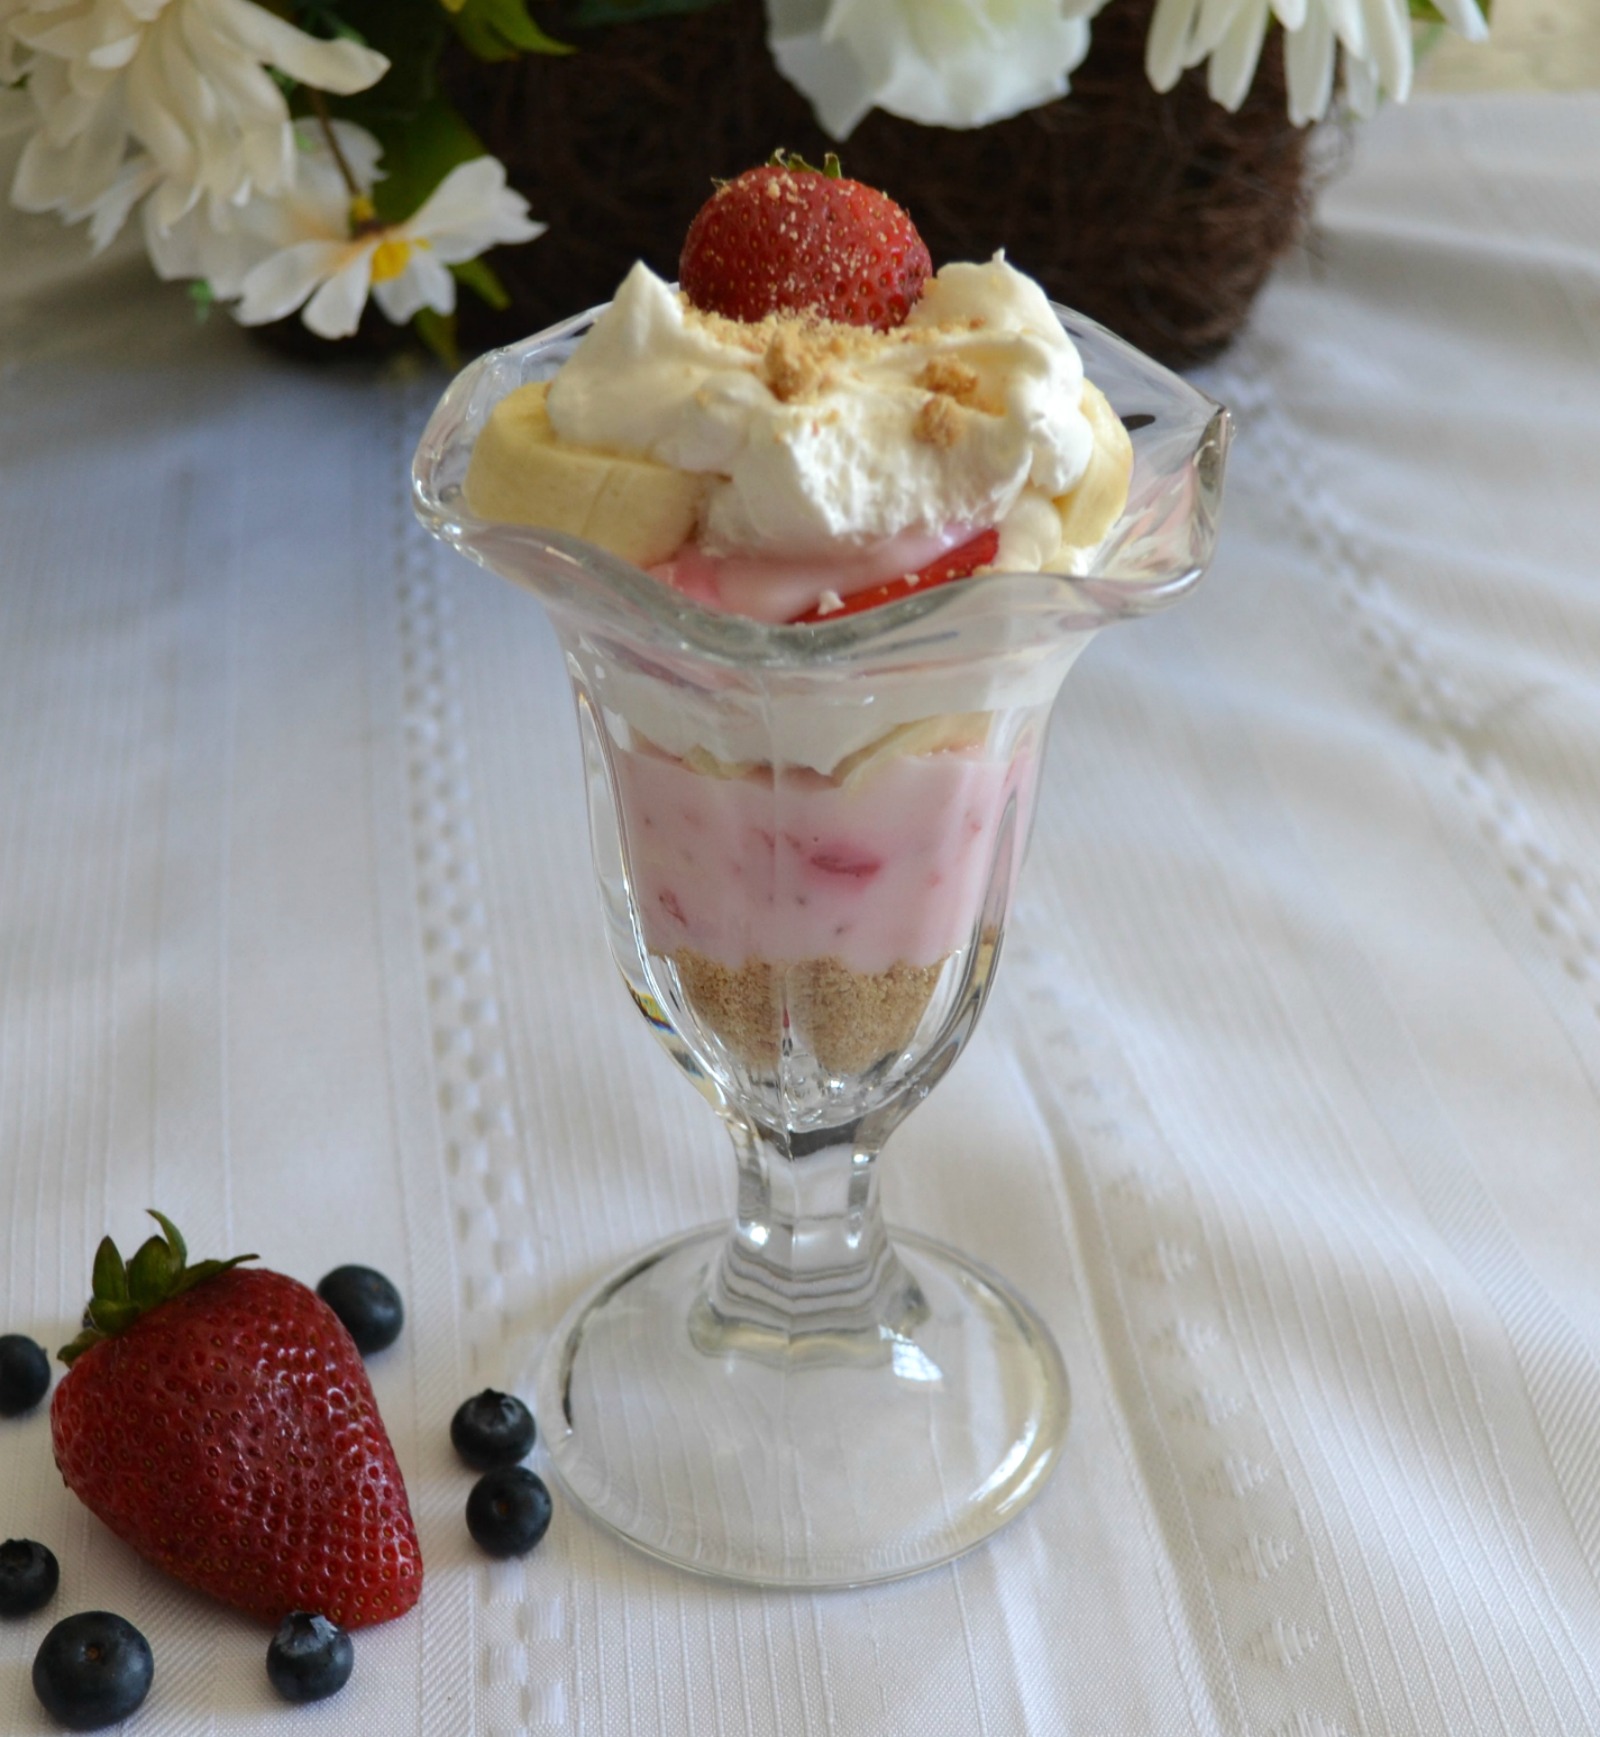 strawberry parfait, yogurt, strawberries